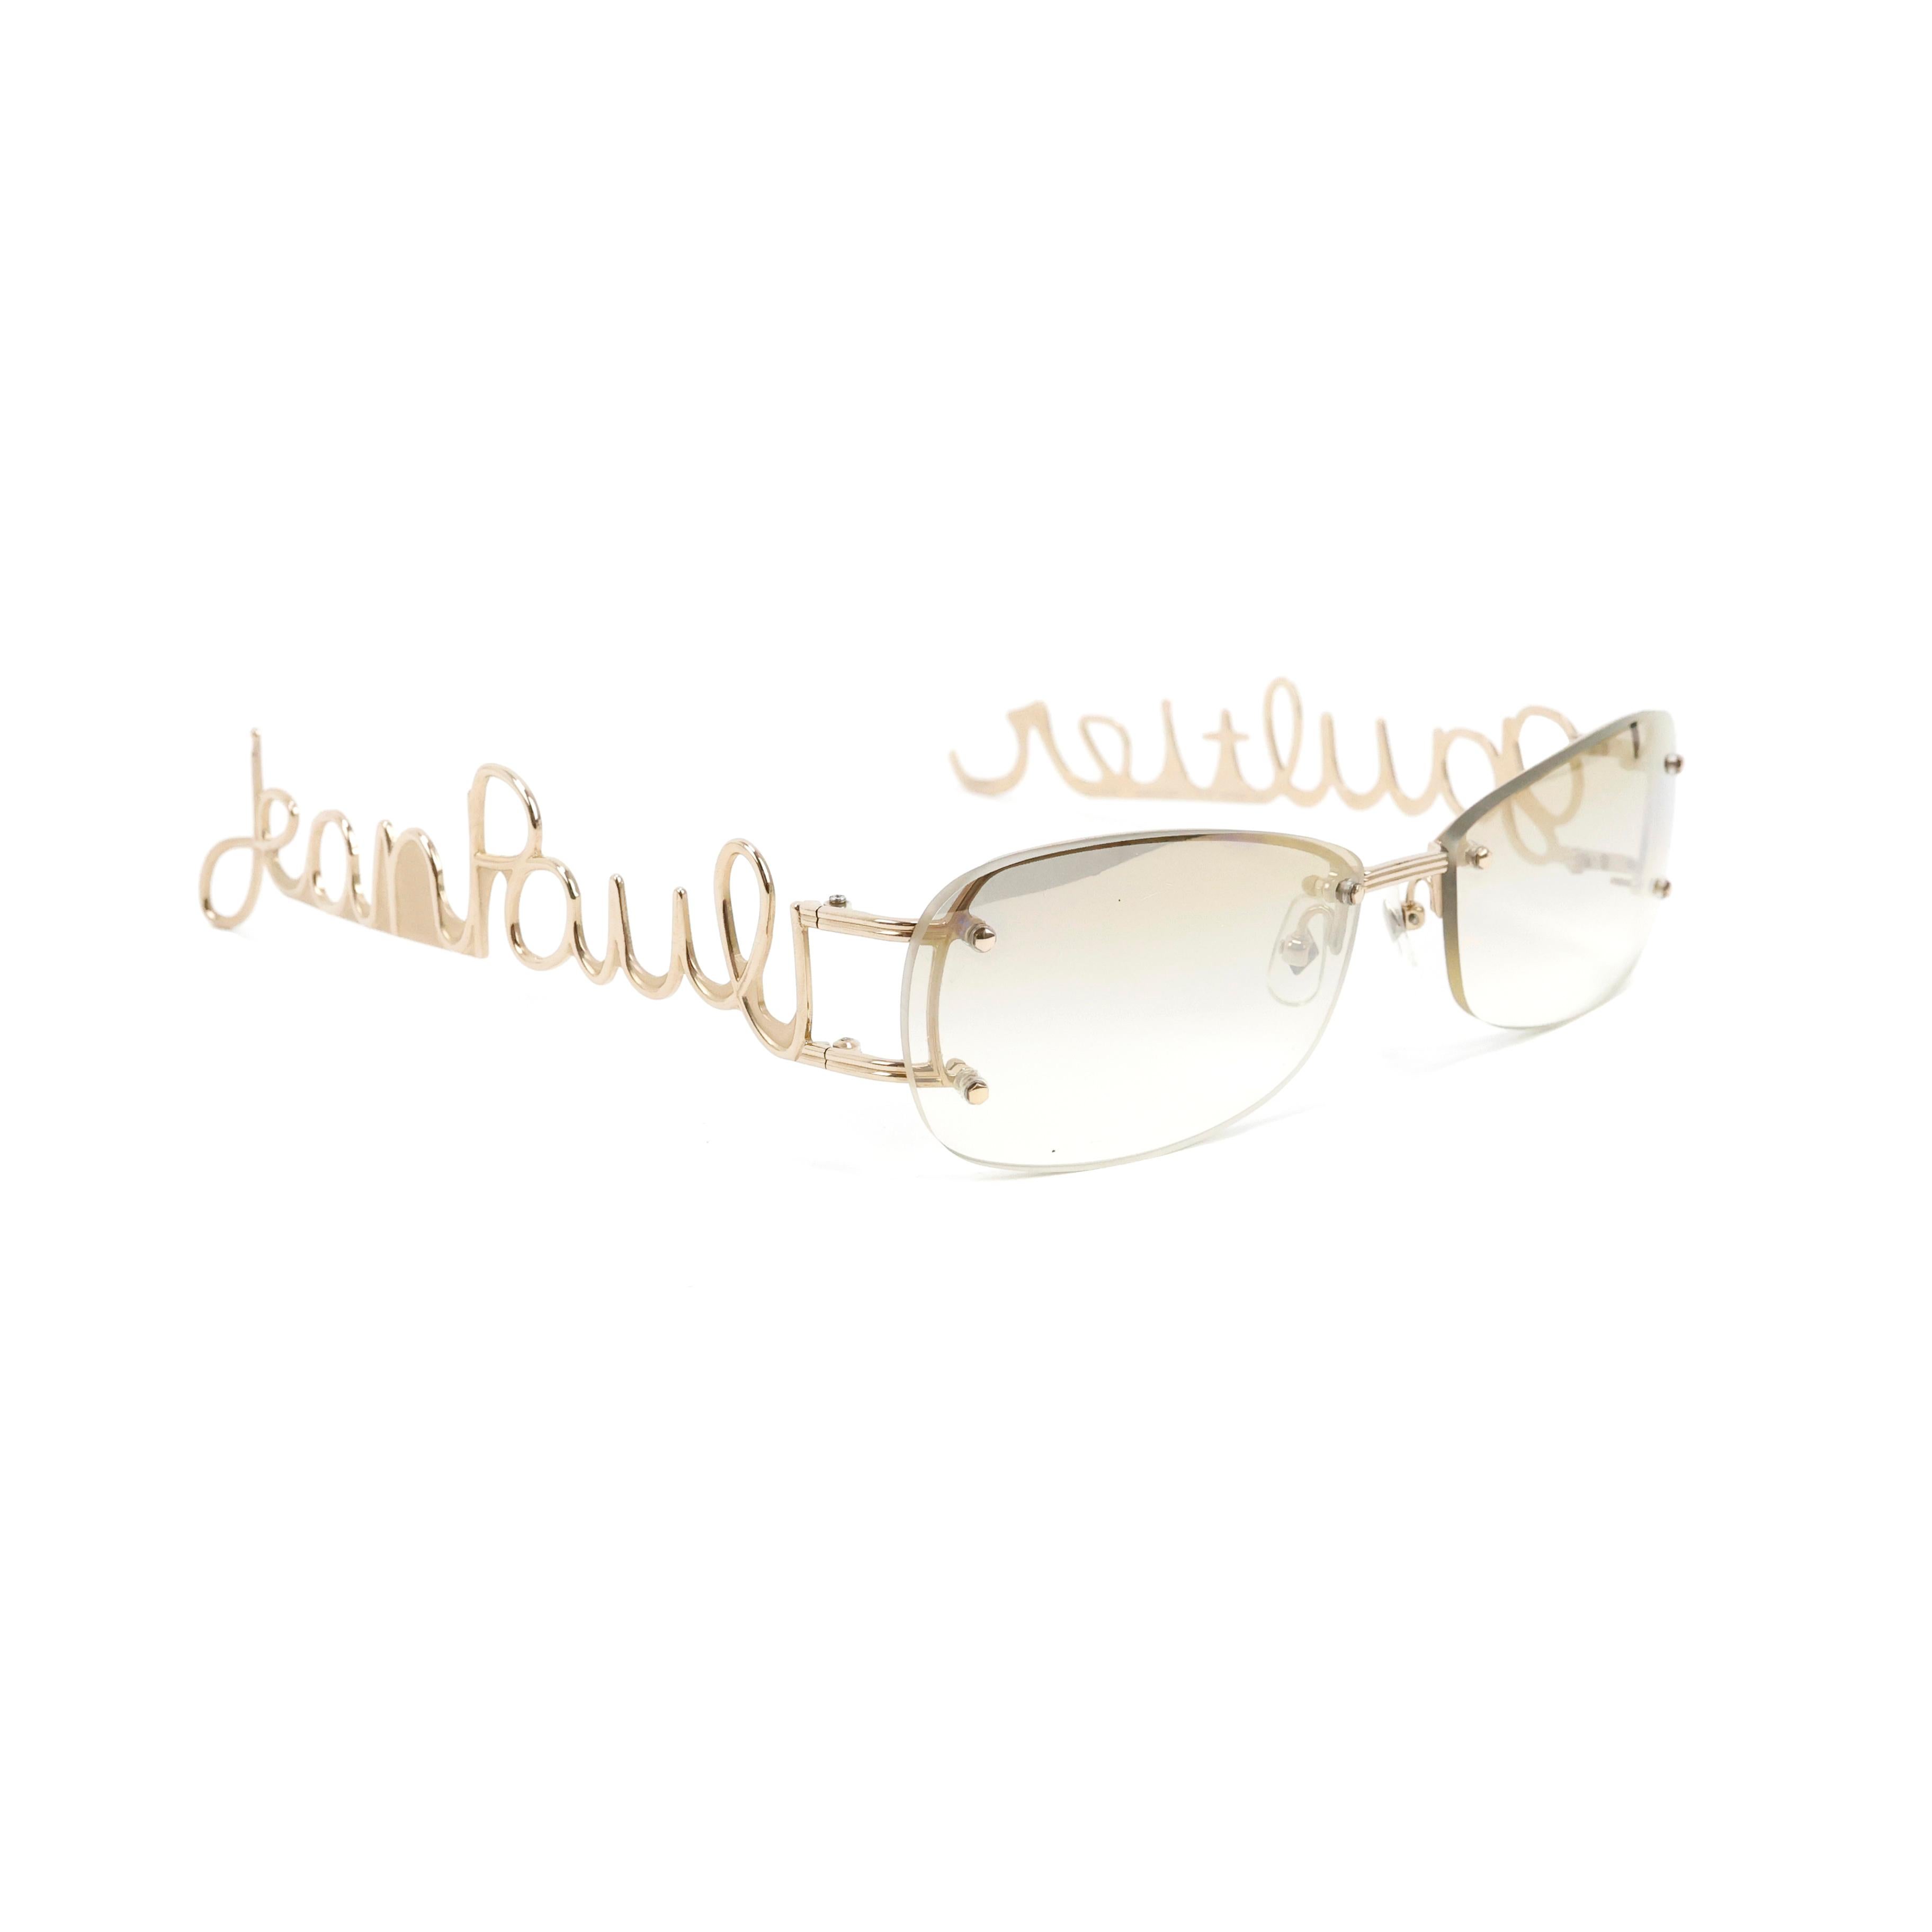 Seltene Sonnenbrille von Jean Paul Gaultier mit kursivem Logo in Gold.


Bedingung:
Wirklich gut.


Verpackung/Zubehör:
Fall.